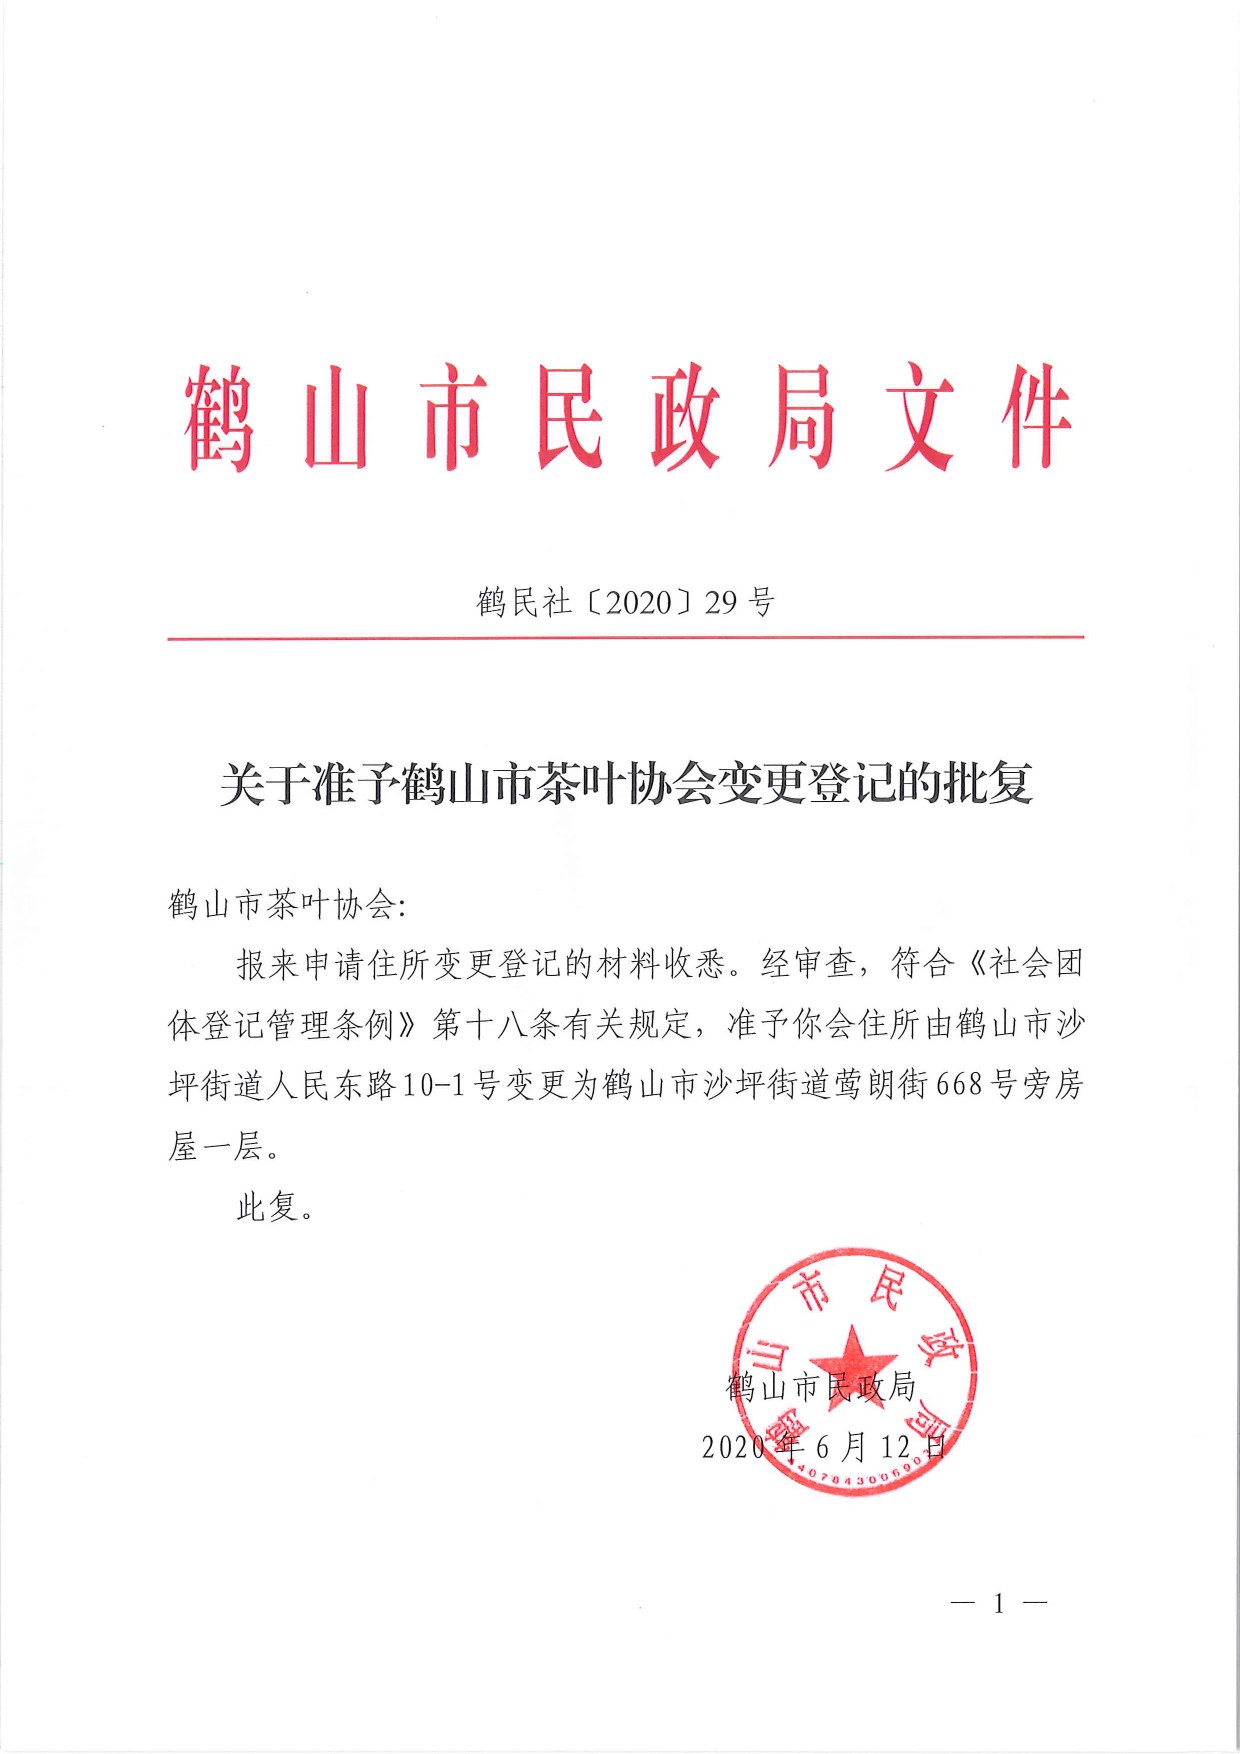 鹤民社〔2020〕29号关于准予鹤山市茶叶协会变更登记的批复-1.jpg